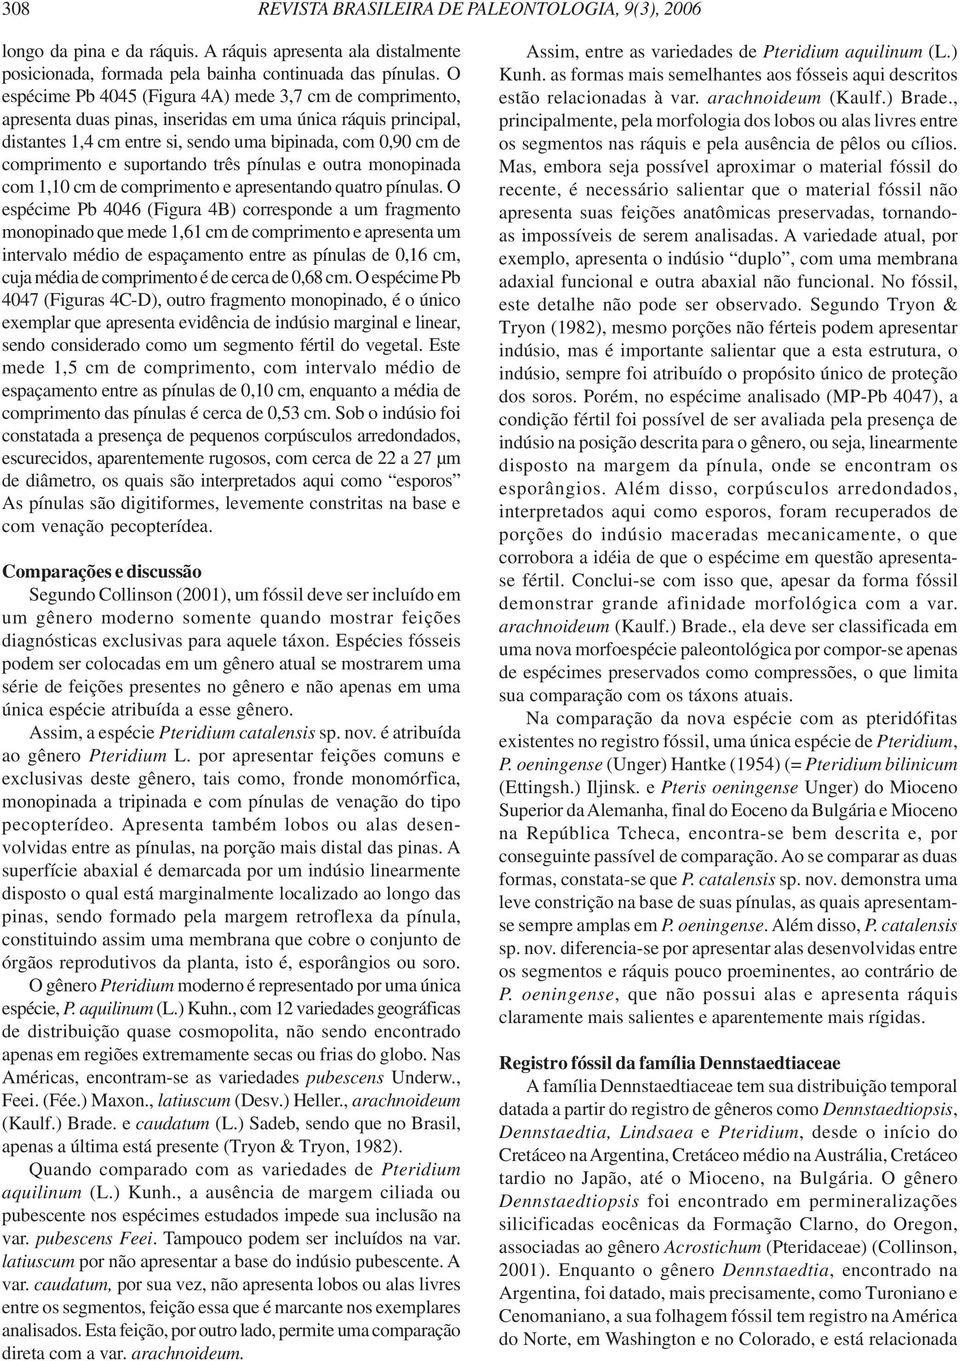 E. 1980. Vegetais do Quaternário do Brasil. II Flórula de Umbuzeiro, PB. Anais da Academia Brasileira de Ciências, 52(1):93-108. Hantke, R. 1954.